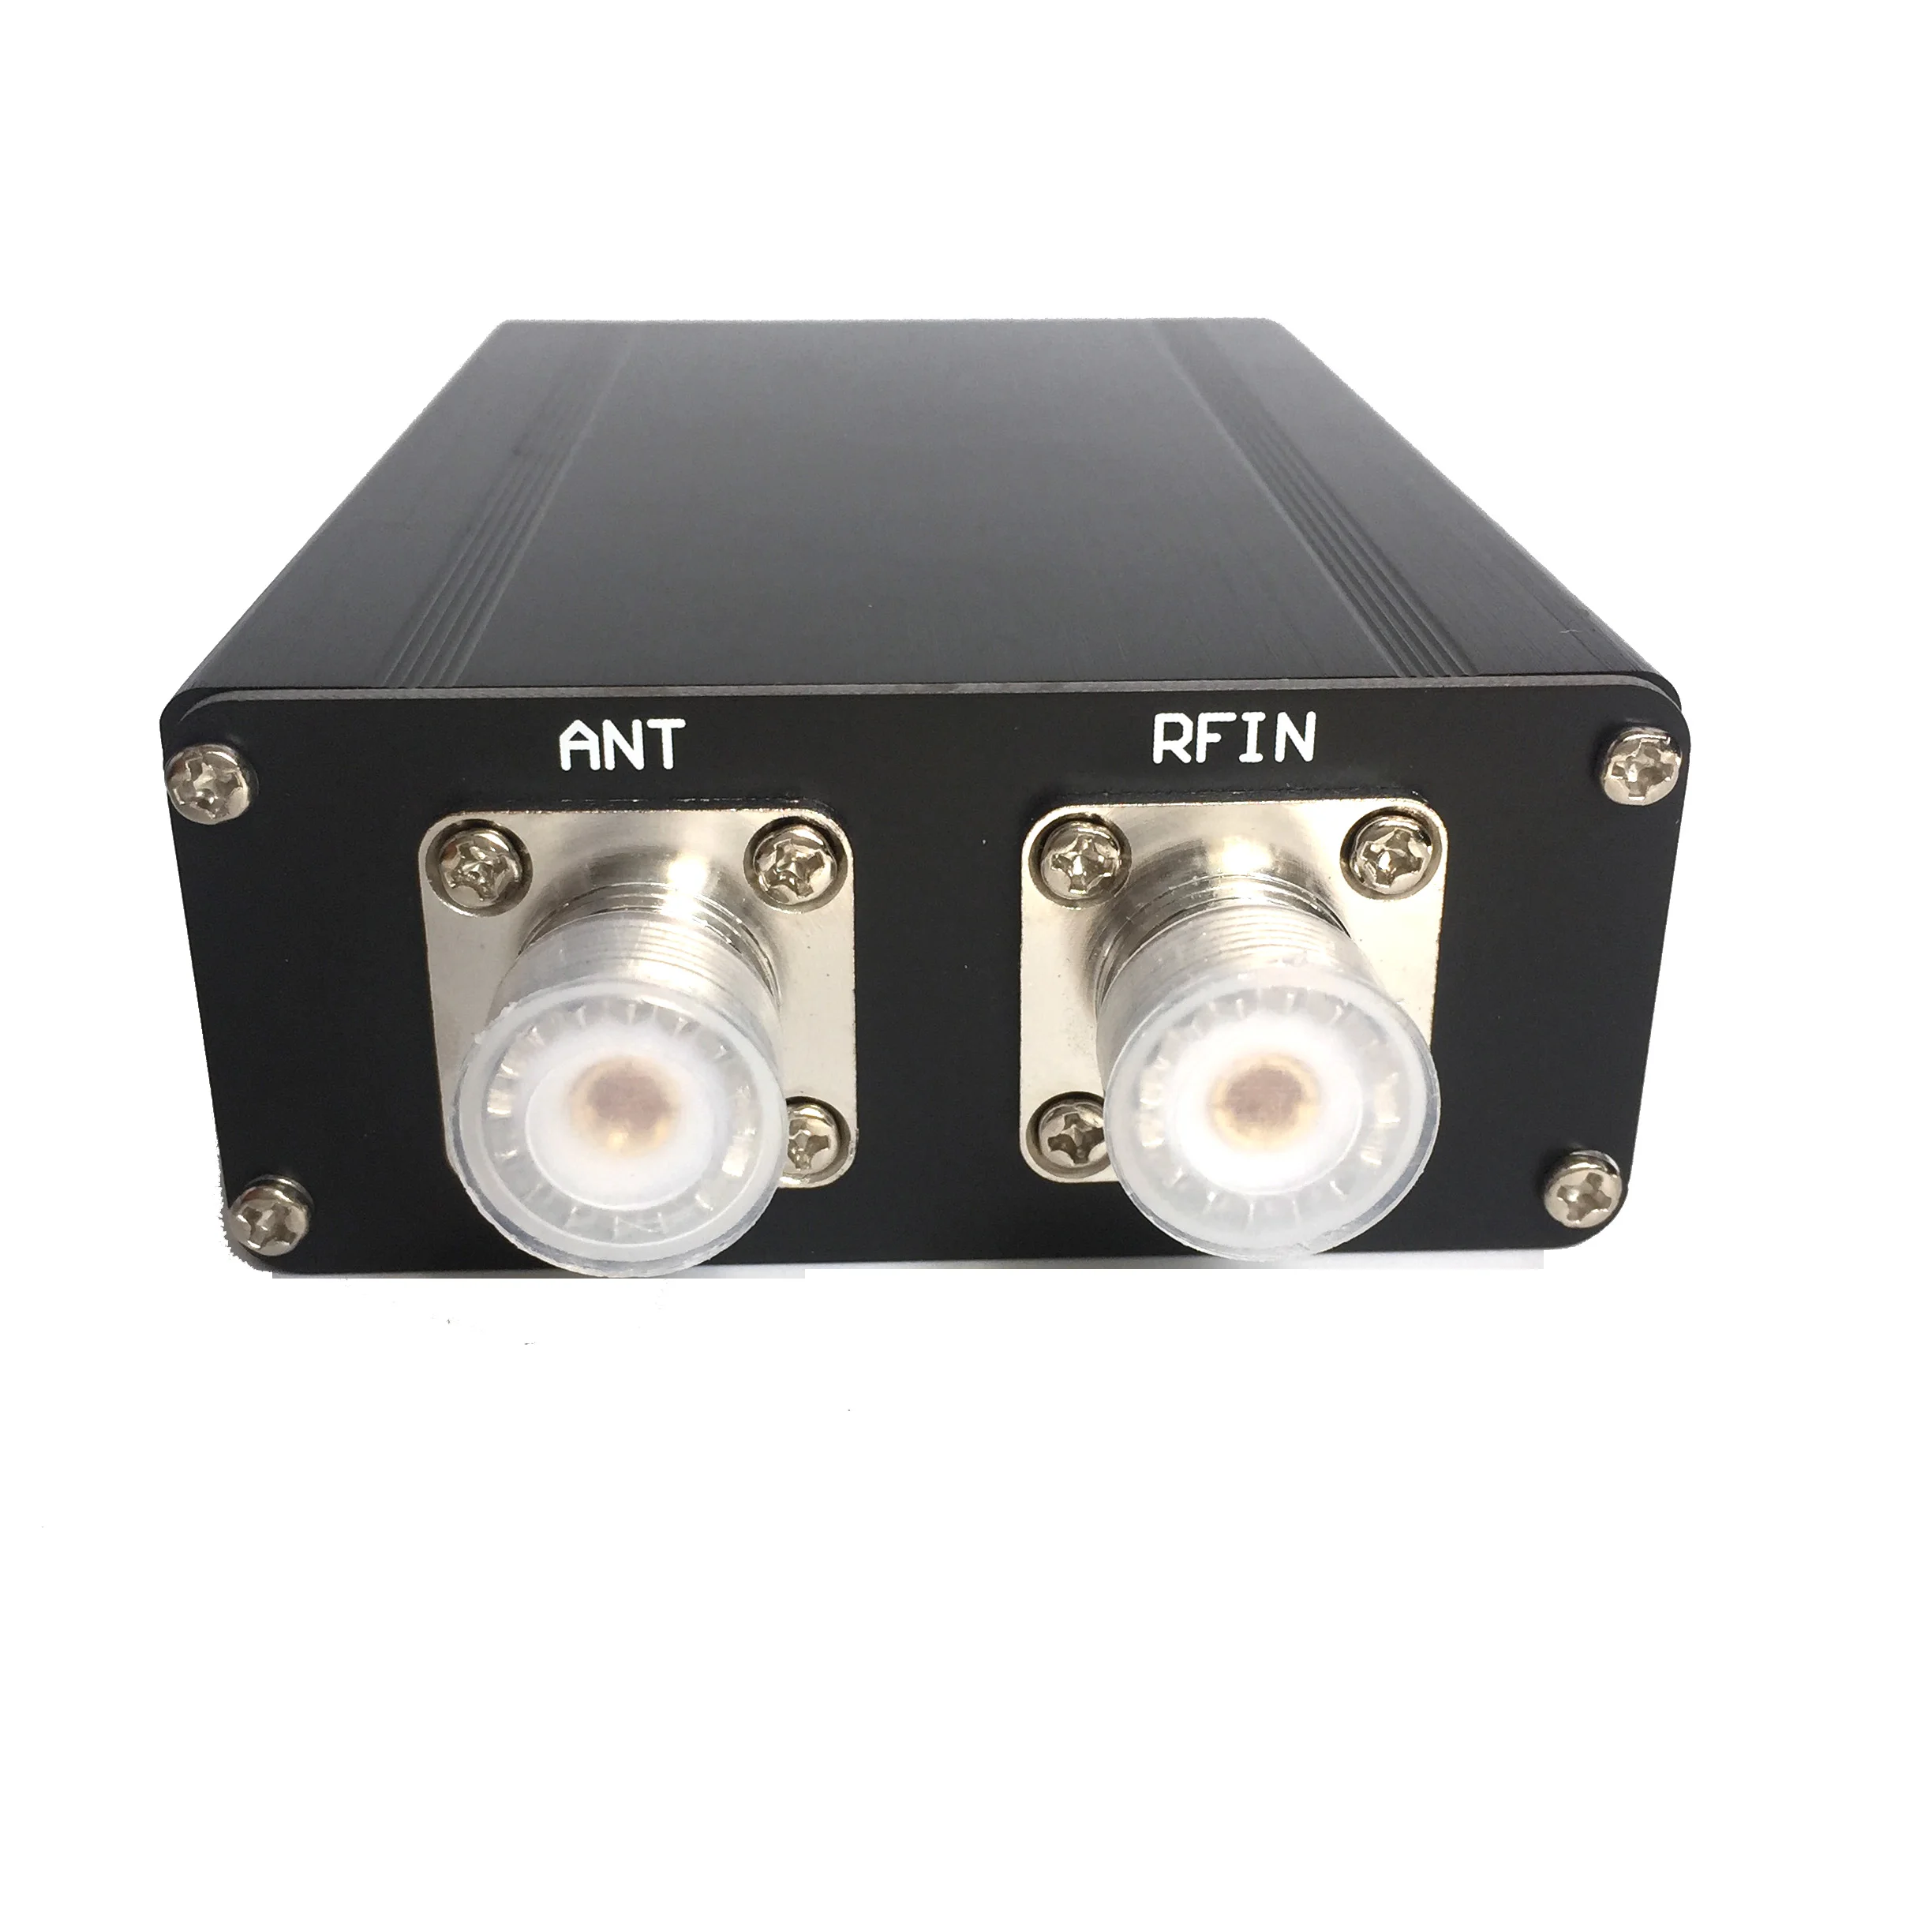 Готовый мини-автоматический антенный тюнер ATU-100 ATU-100 1,8-50 МГц от N7DDC 7x7 + Mini 0.96 OLED + Металлический корпус + батарея 1350 МА2